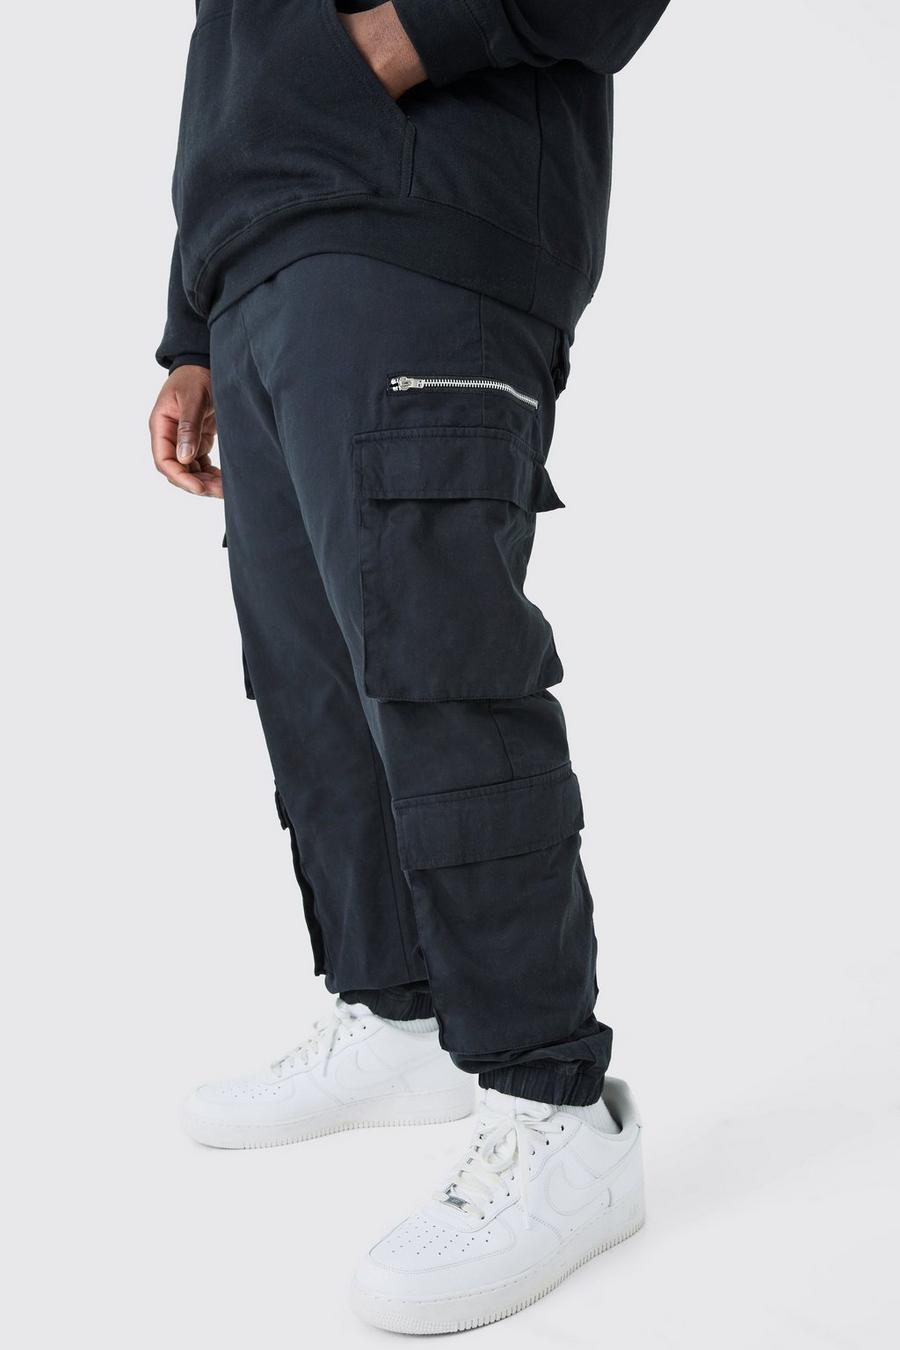 Pantaloni Cargo Plus Size Slim Fit con laccetti lunghi, Black